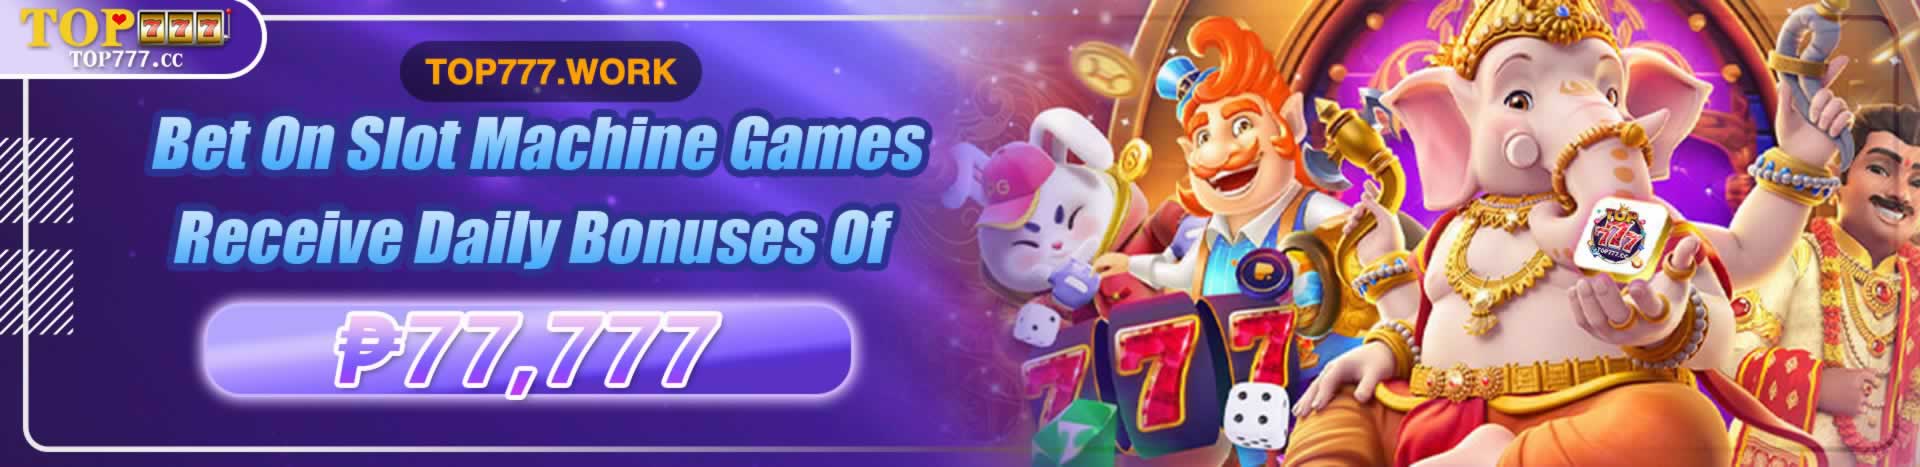 top777 casino online banner 1